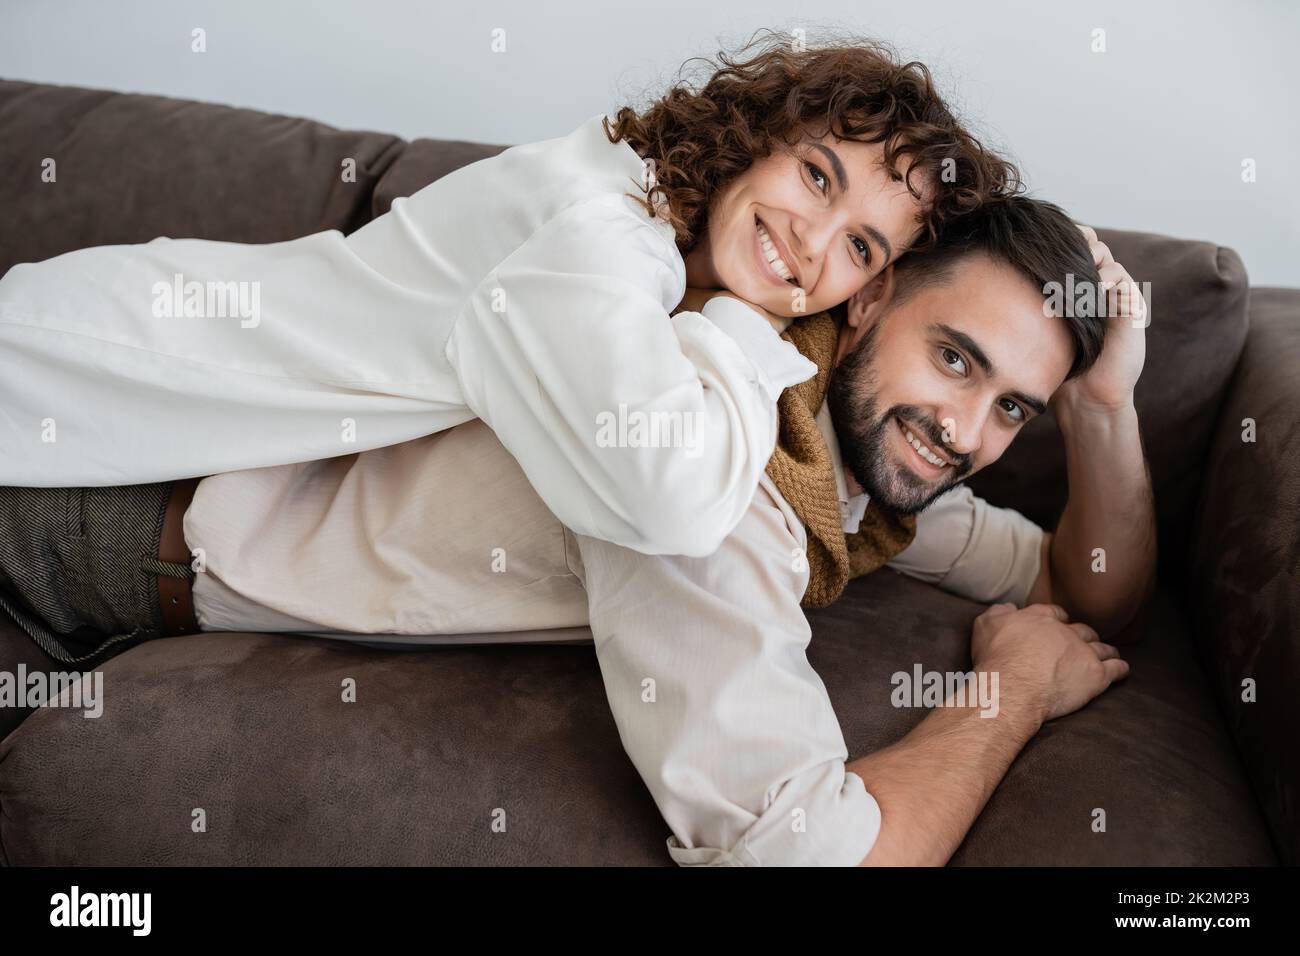 donna allegra e ricciola sdraiata sul dorso di un marito bearded sul divano, immagine di scorta Foto Stock